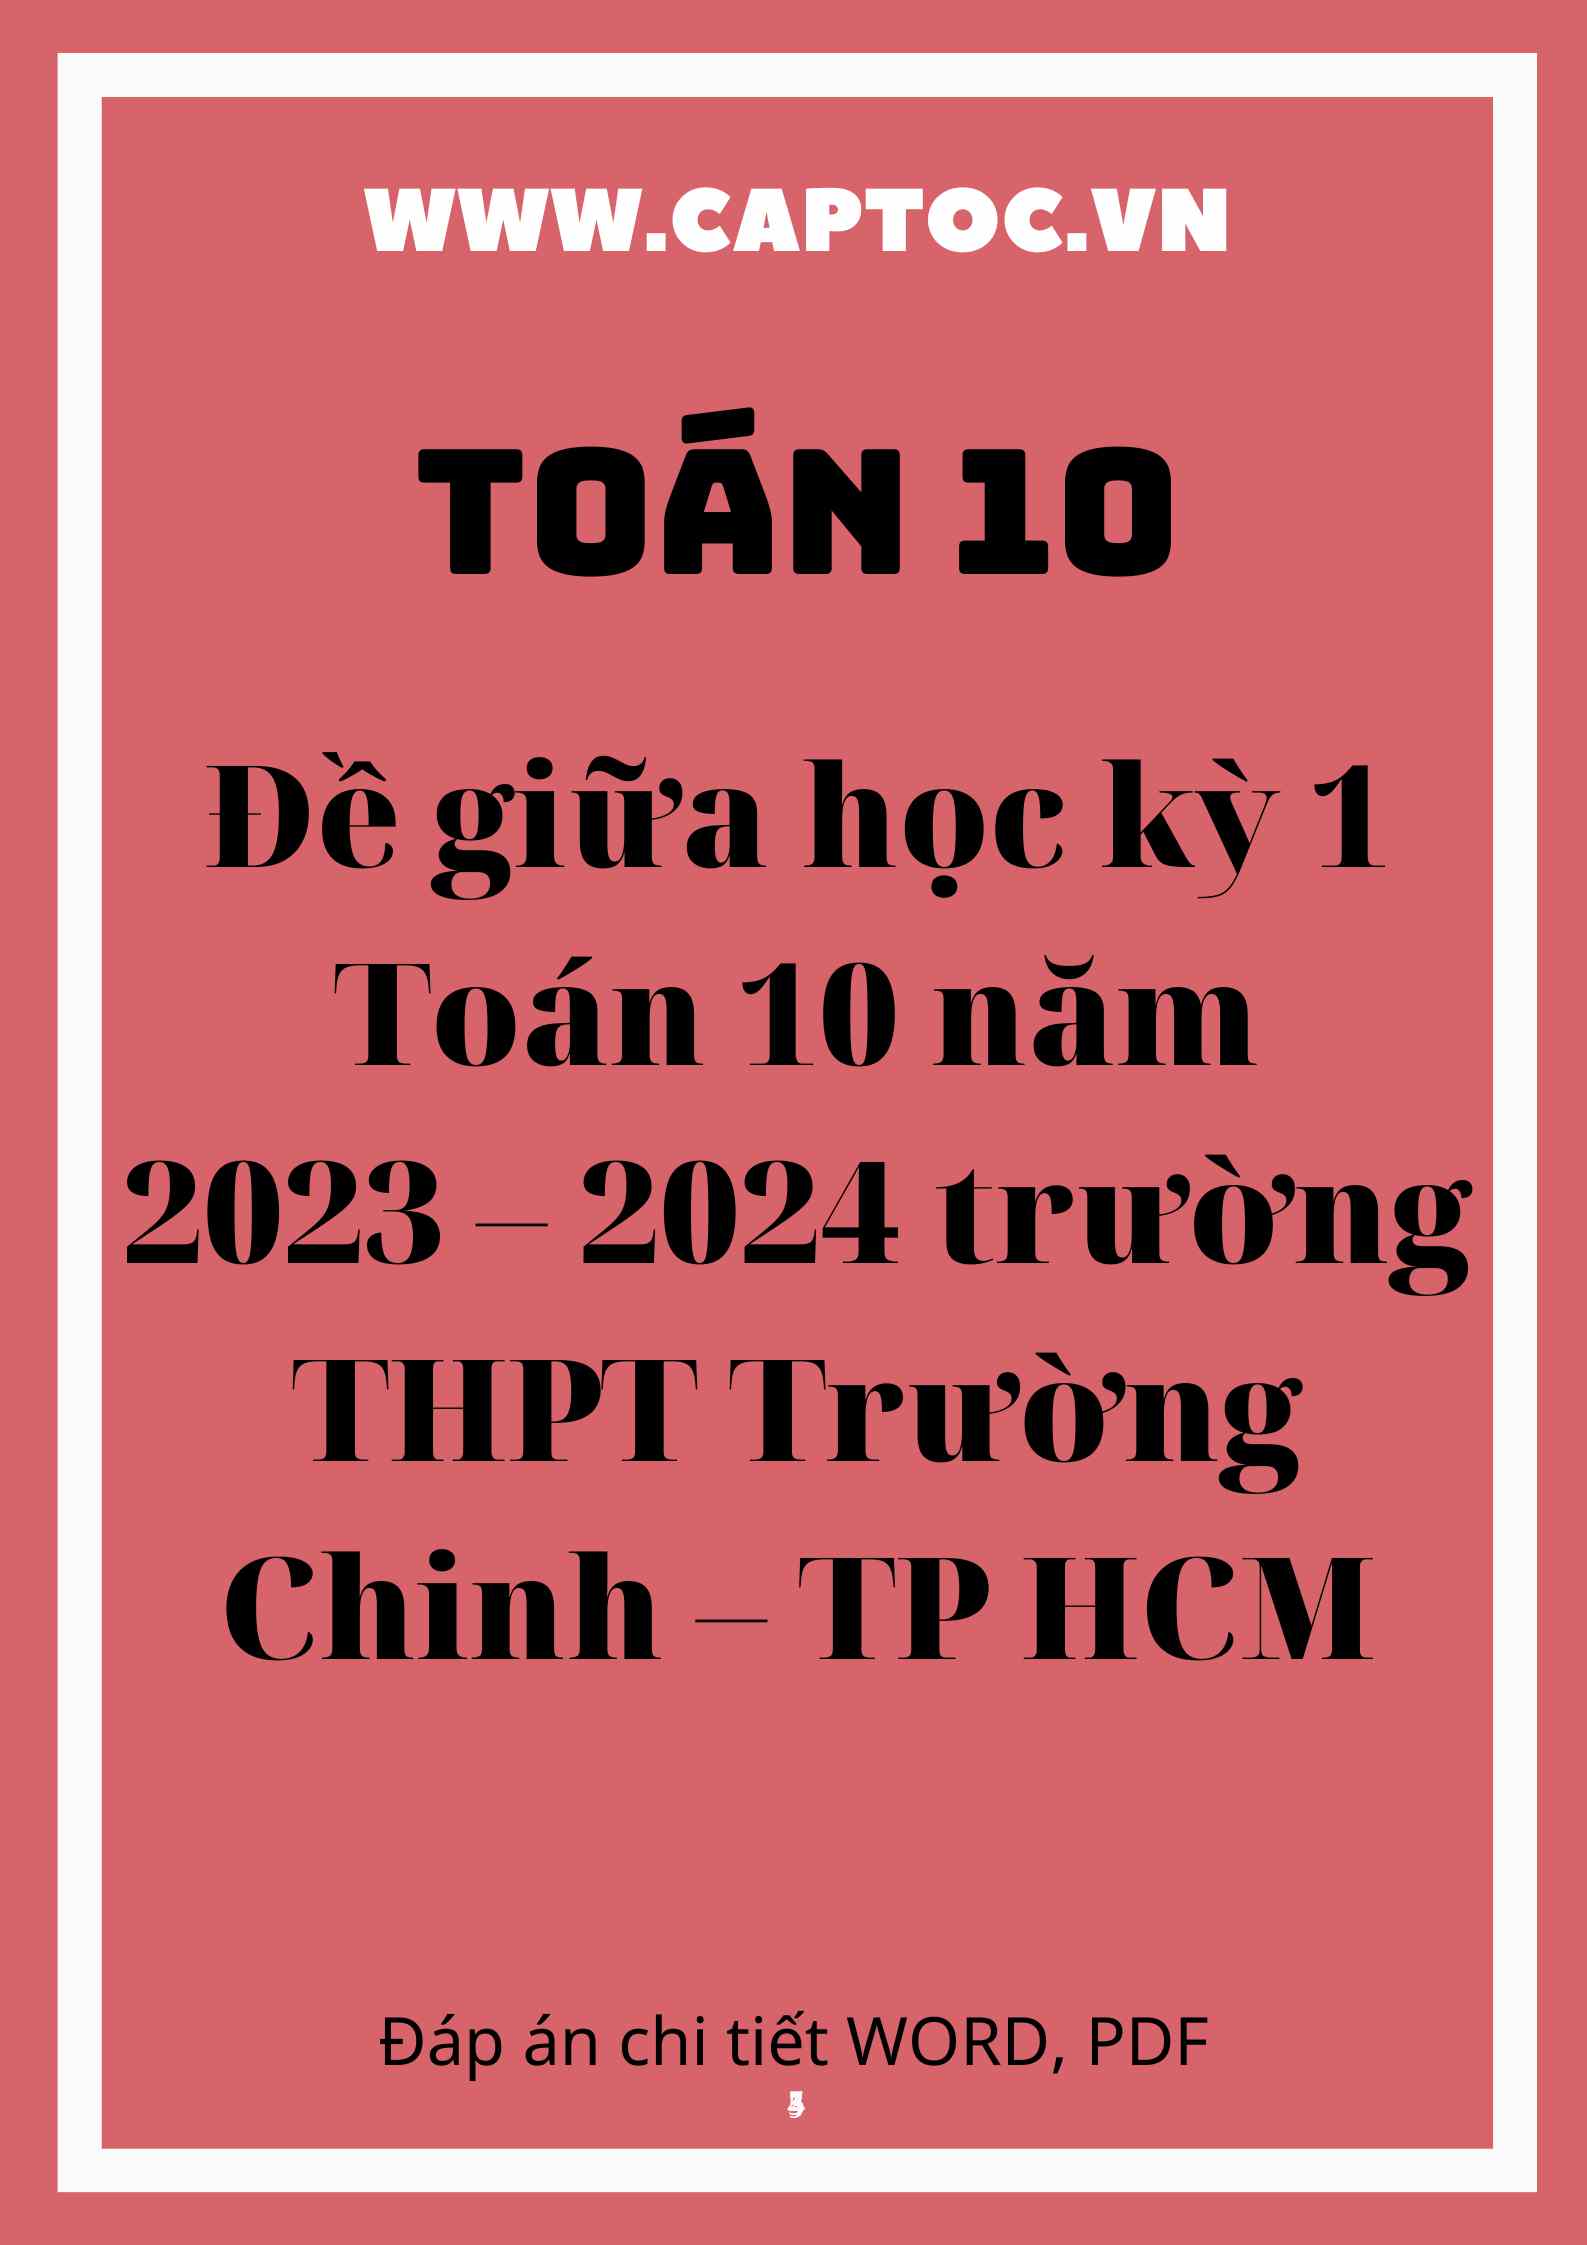 Đề giữa học kỳ 1 Toán 10 năm 2023 – 2024 trường THPT Trường Chinh – TP HCM